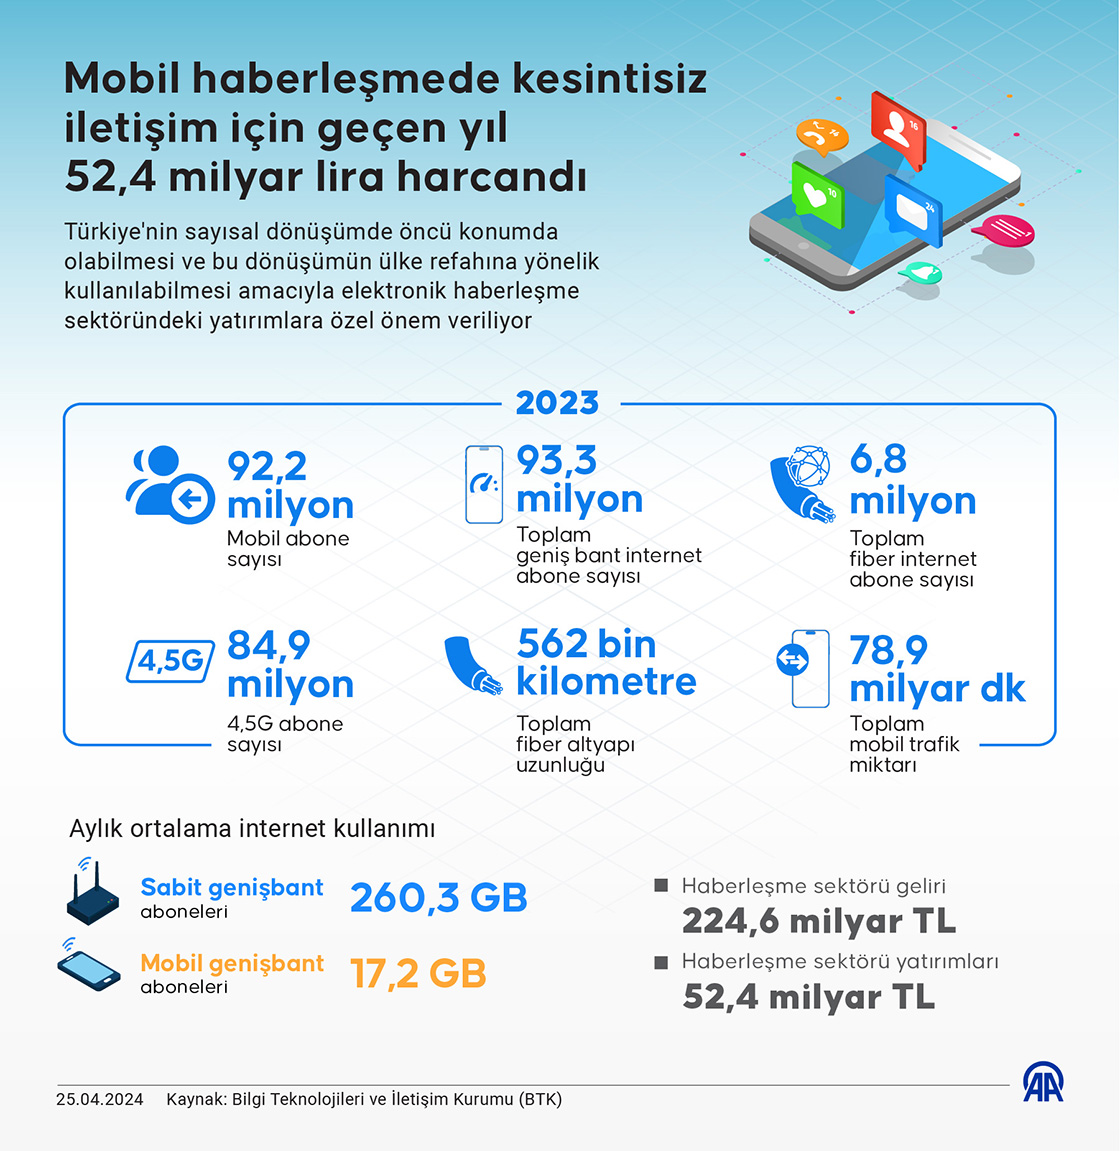 Mobil haberleşmede kesintisiz iletişim için geçen yıl 52,4 milyar lira harcandı